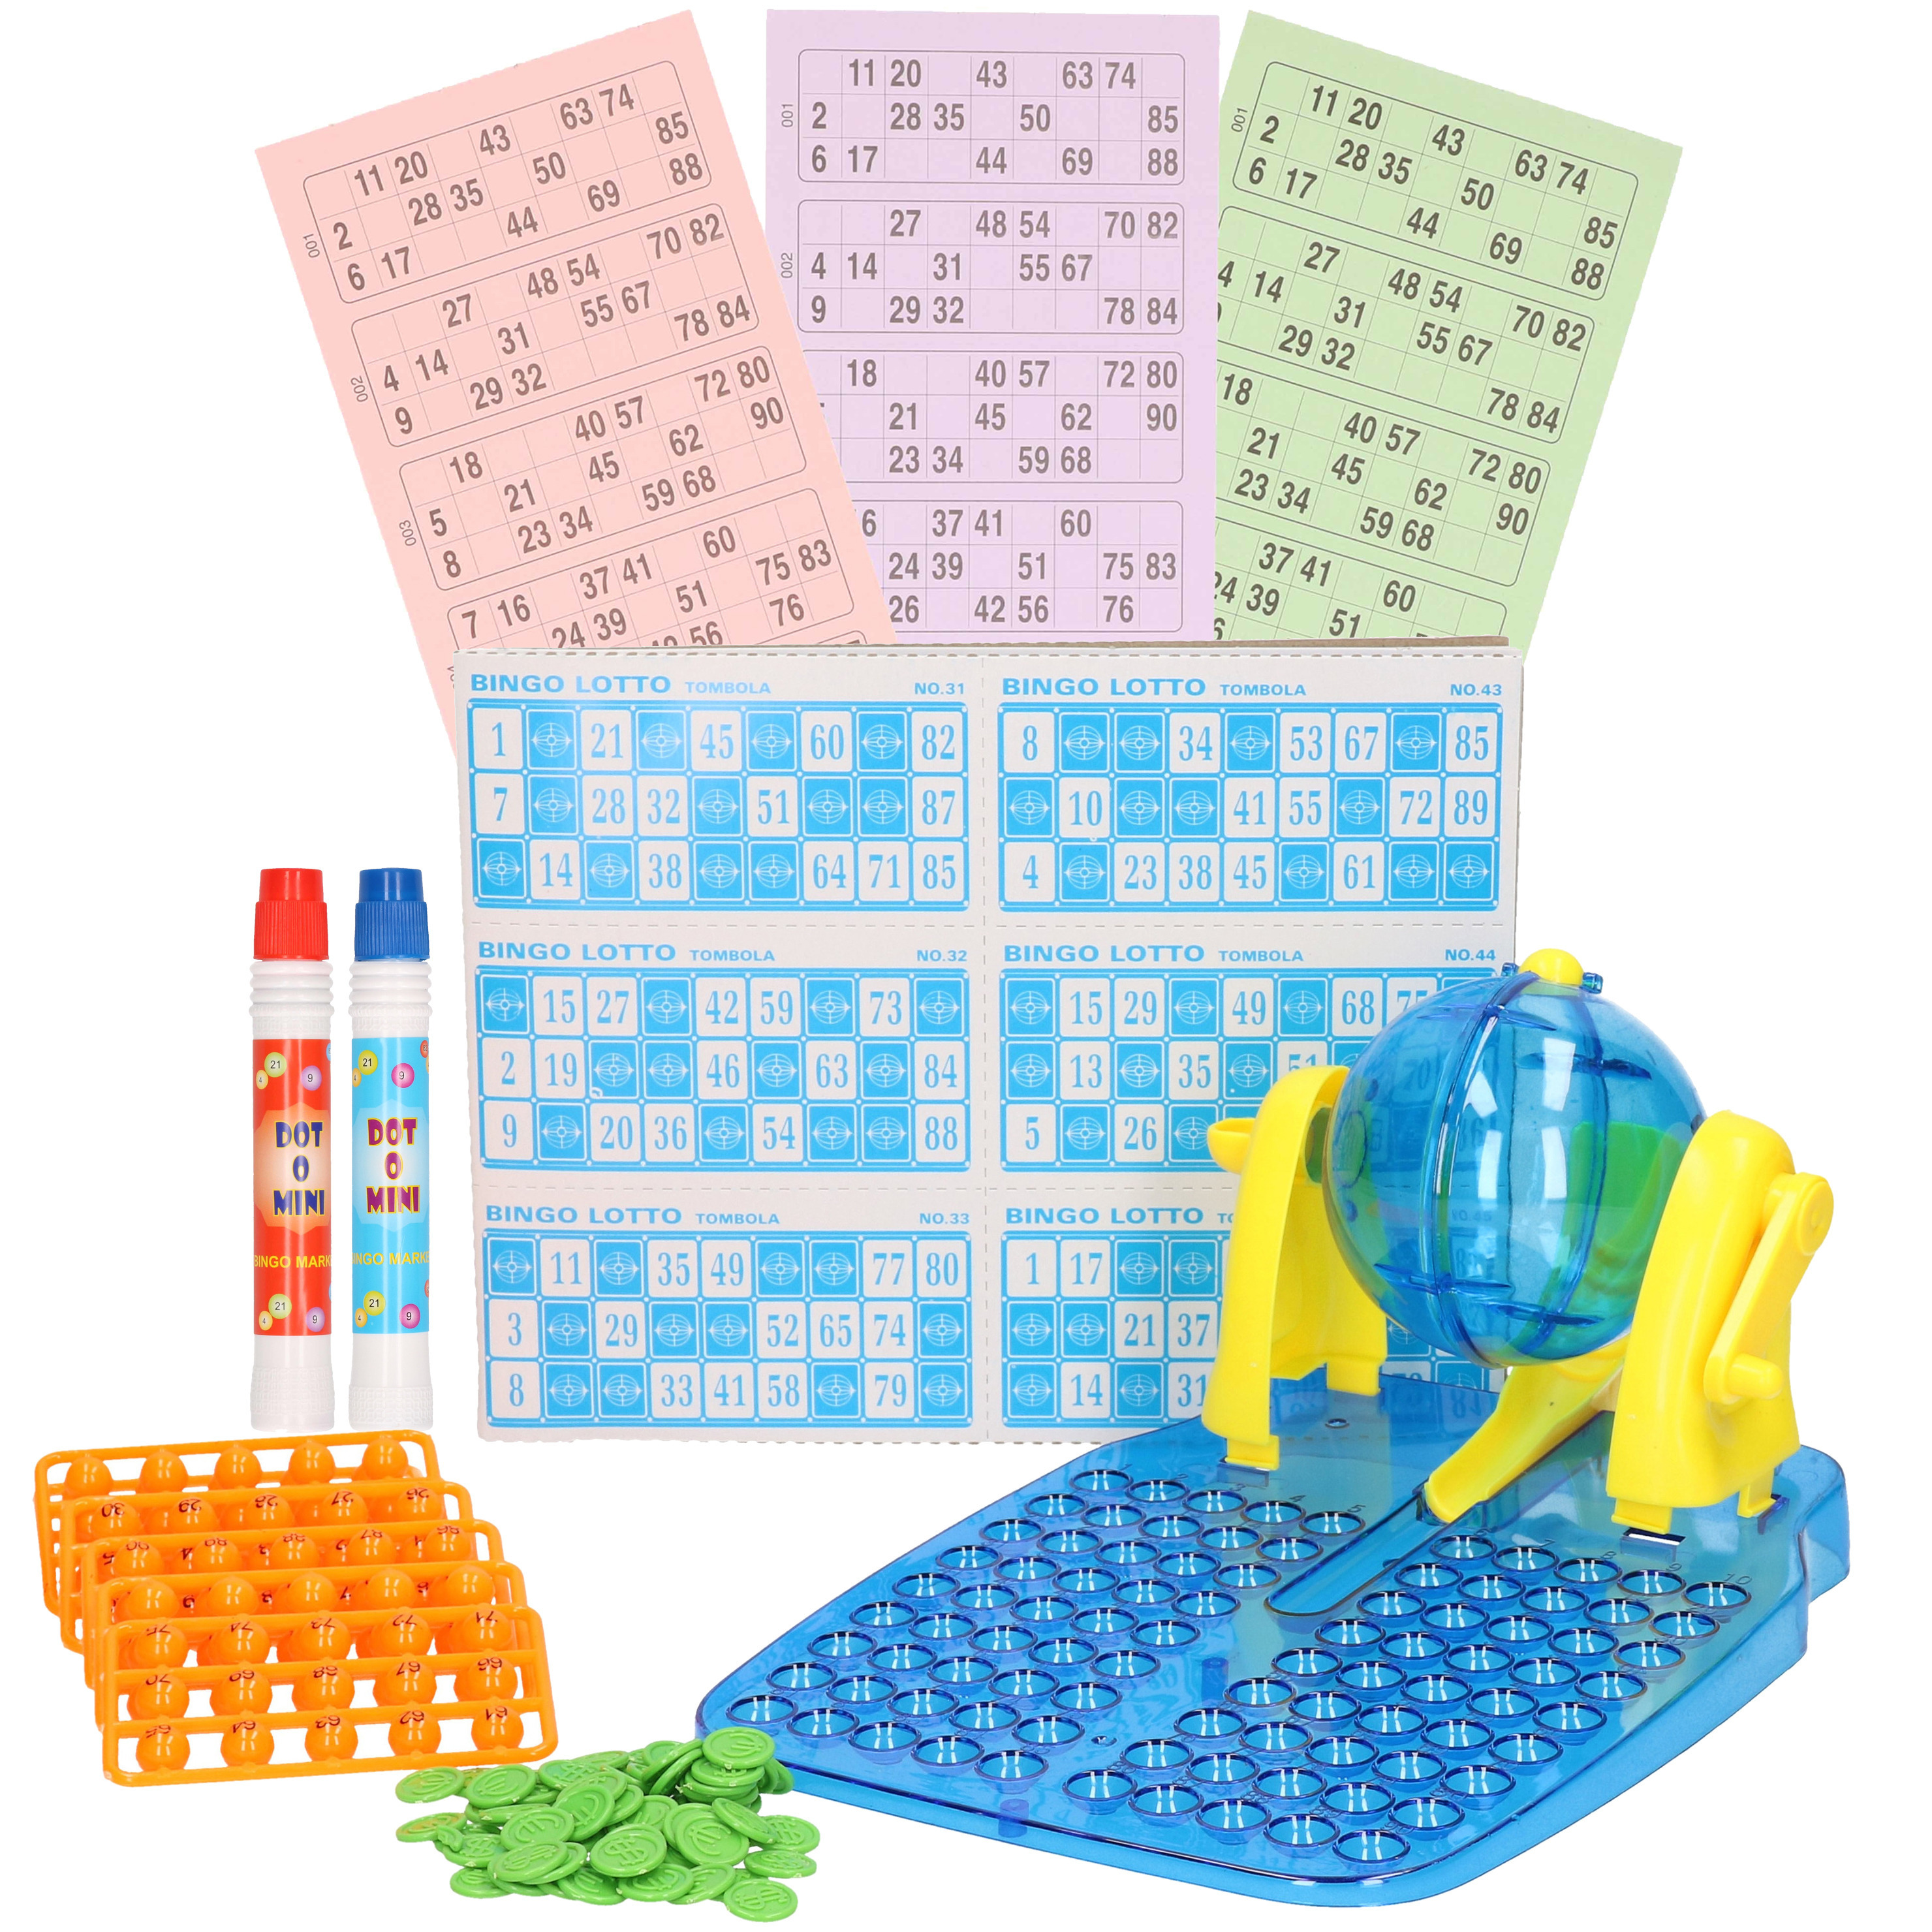 Bingospel blauw-geel 1-90 met bingomolen, fiches, 148 bingokaarten en 2 bingostiften